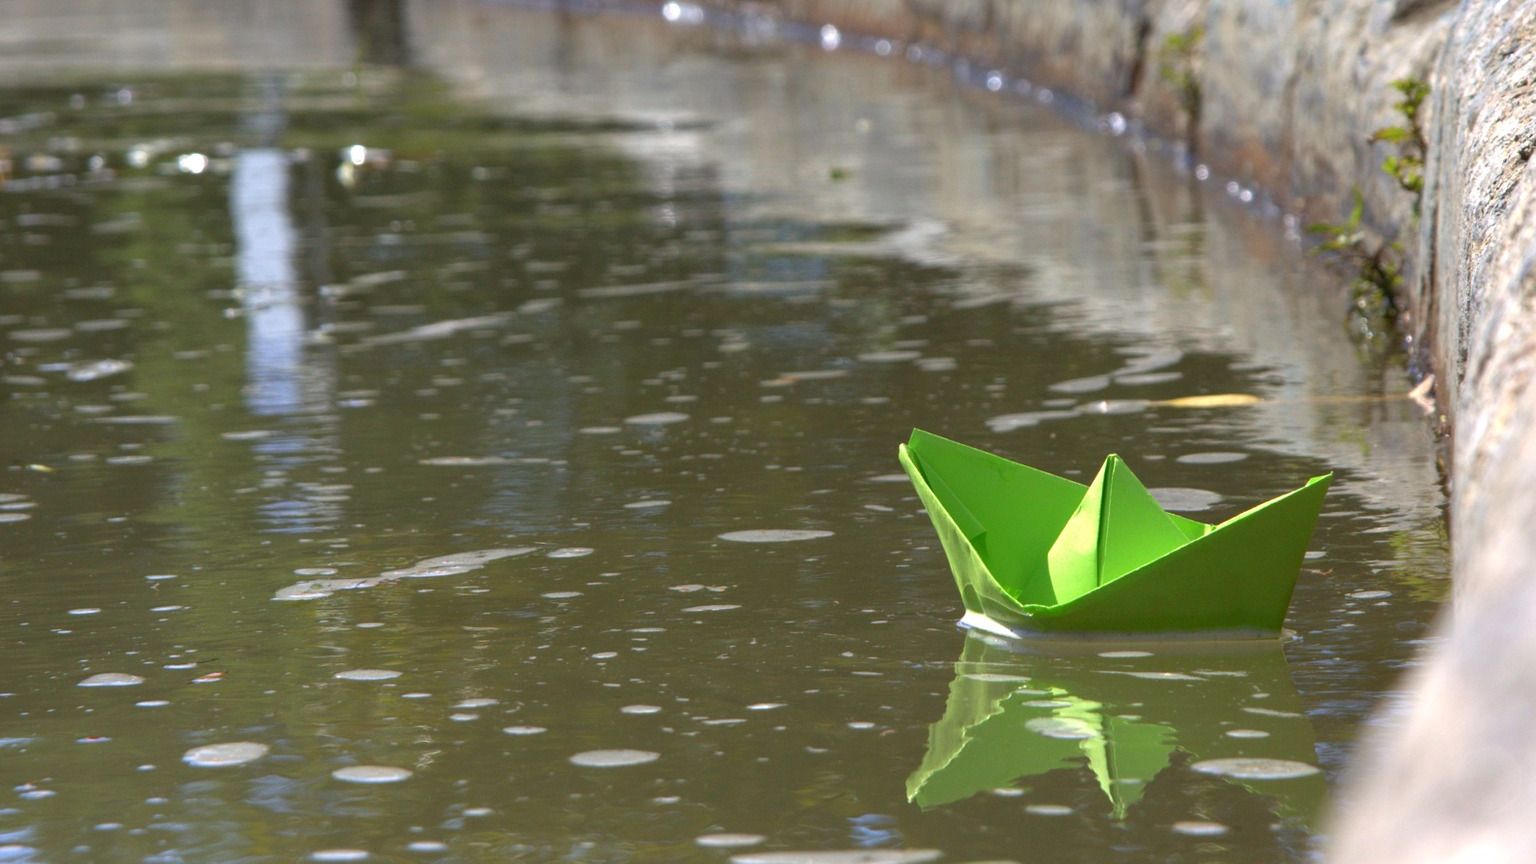 Кораблик из бумаги я по ручью пустил. Кораблик в ручейке. Бумажный кораблик. Весенние кораблики.